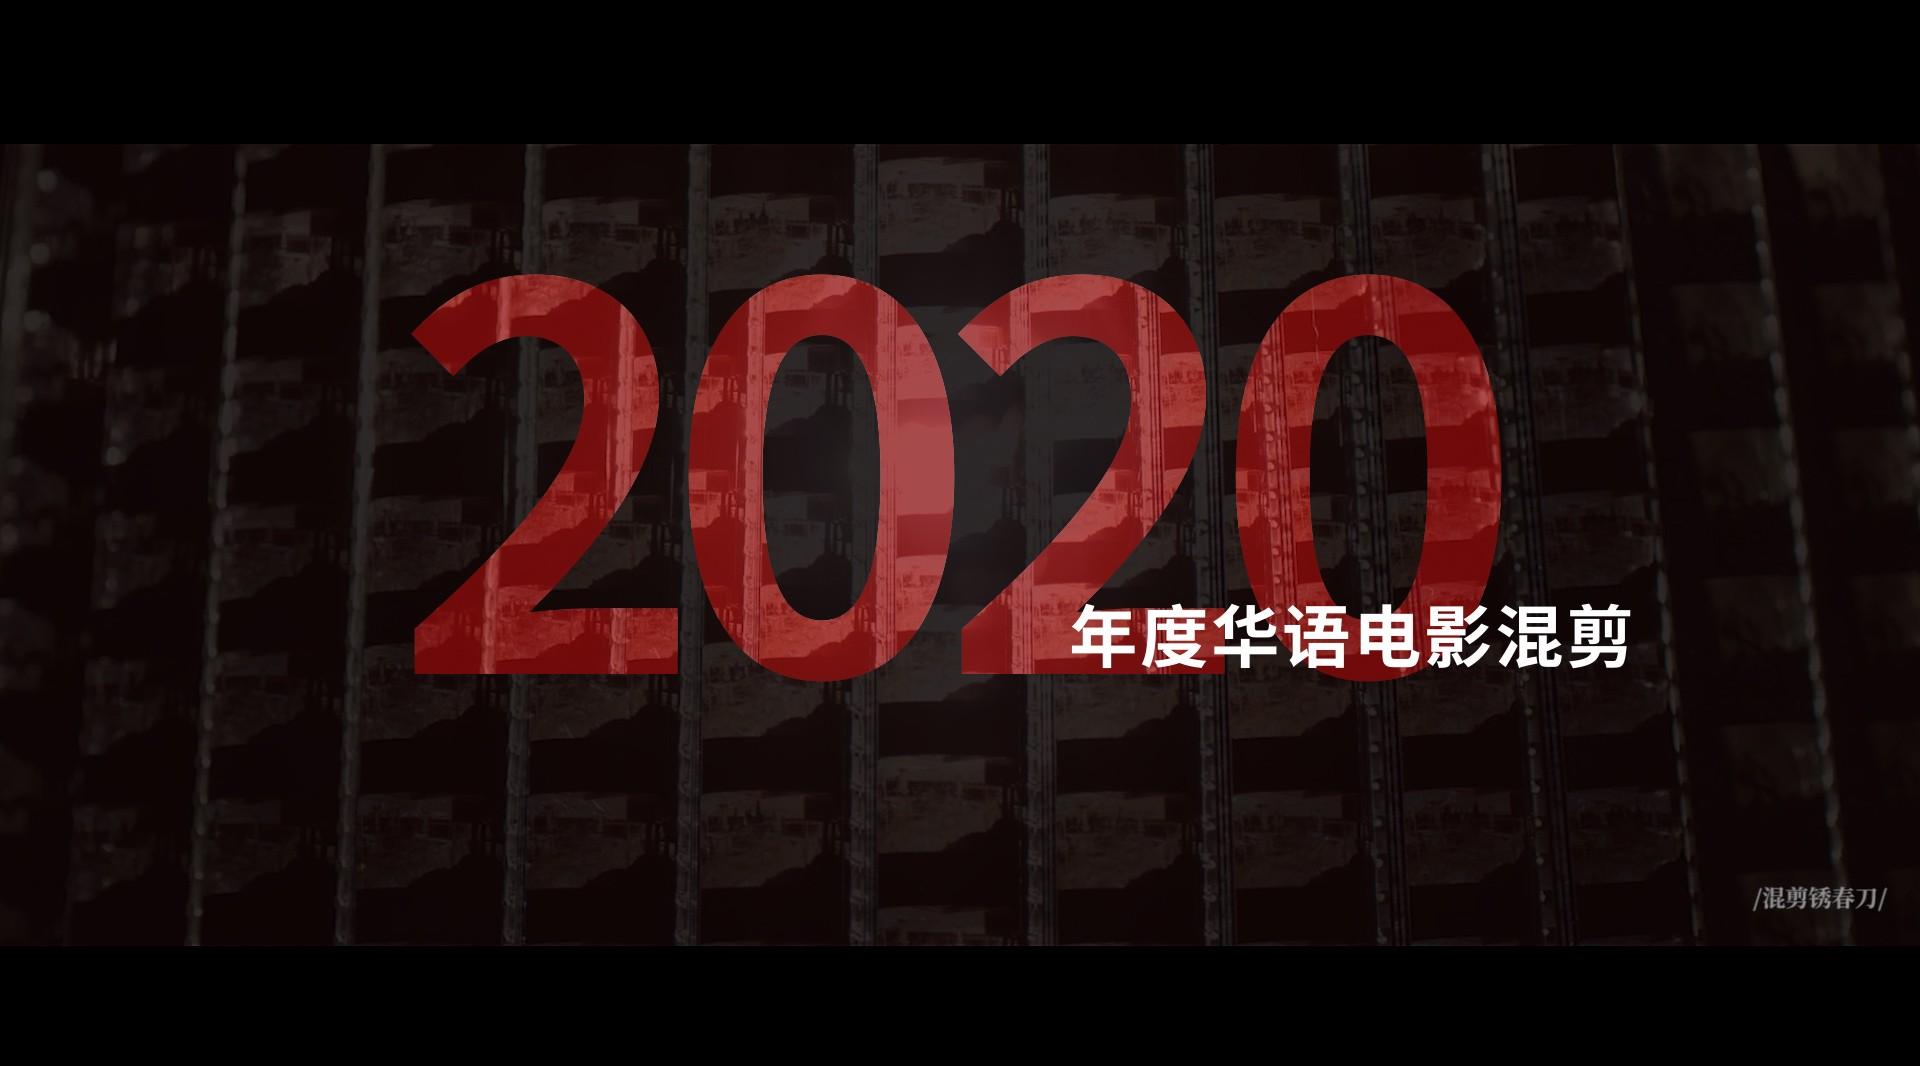 【2020华语电影混剪】世间的一切会变得更美好